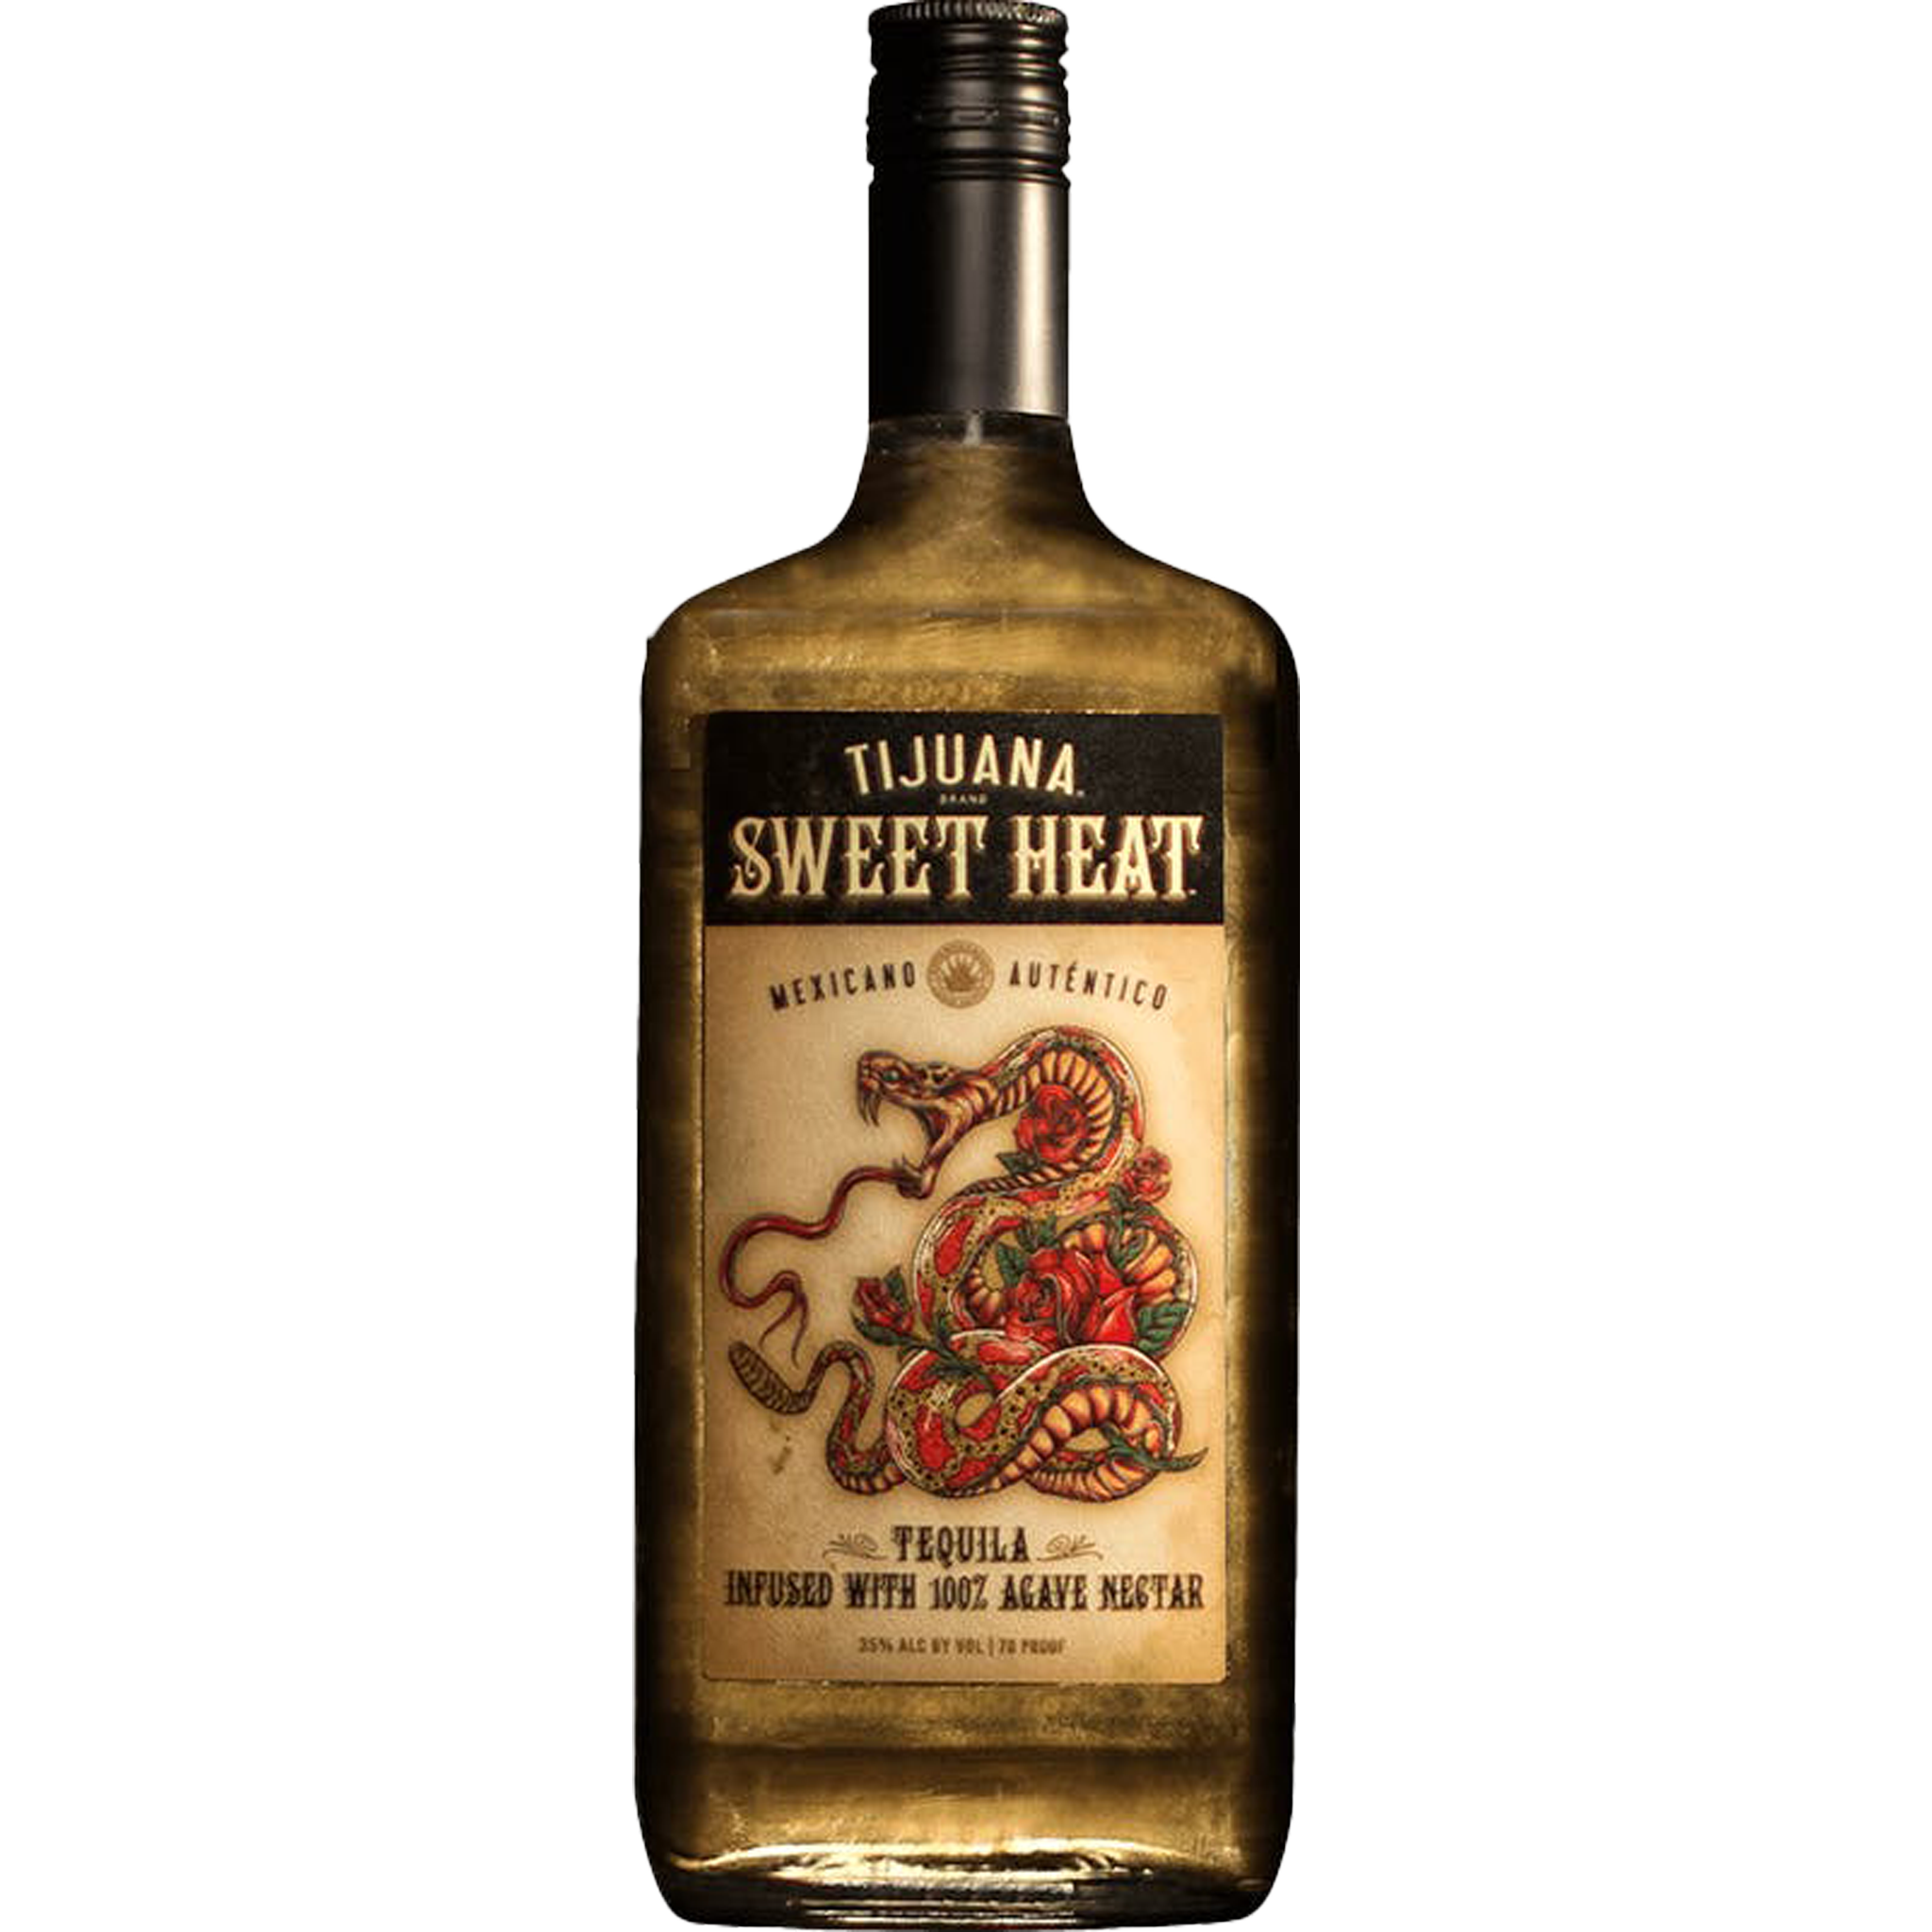 Tijuana Sweet Heat Tequila 1 Liter